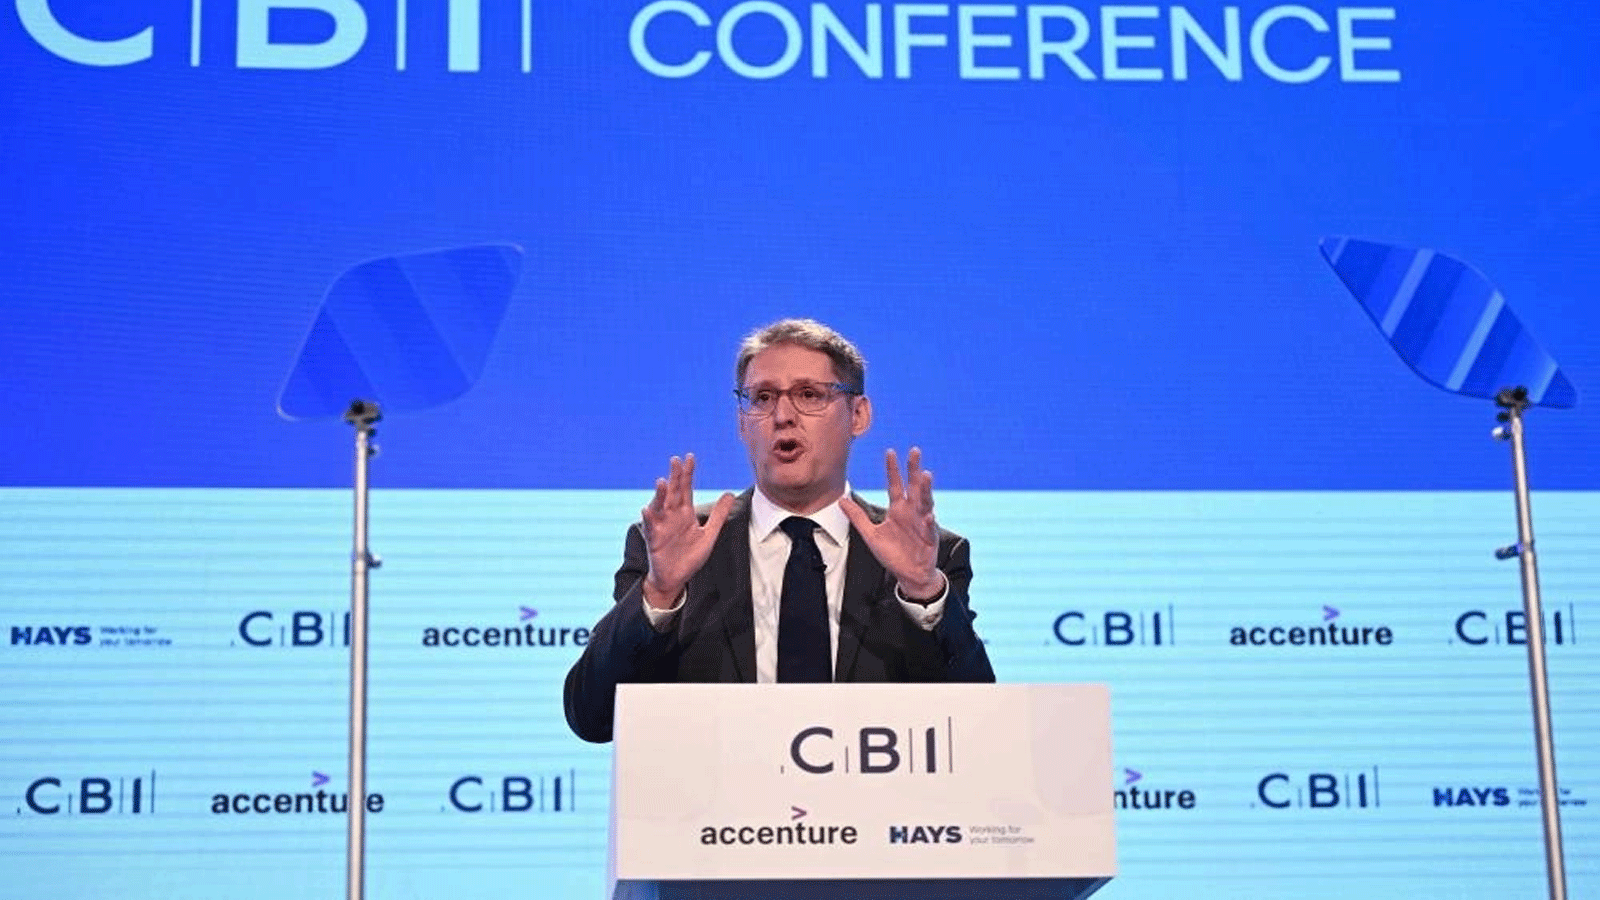  المدير العام لاتحاد صناعة الأعمال (CBI) توني دانكر يخاطب مؤتمر CBI السنوي في مركز مؤتمرات Vox في برمنغهام في 21 تشرين الثاني\نوفمبر 2022